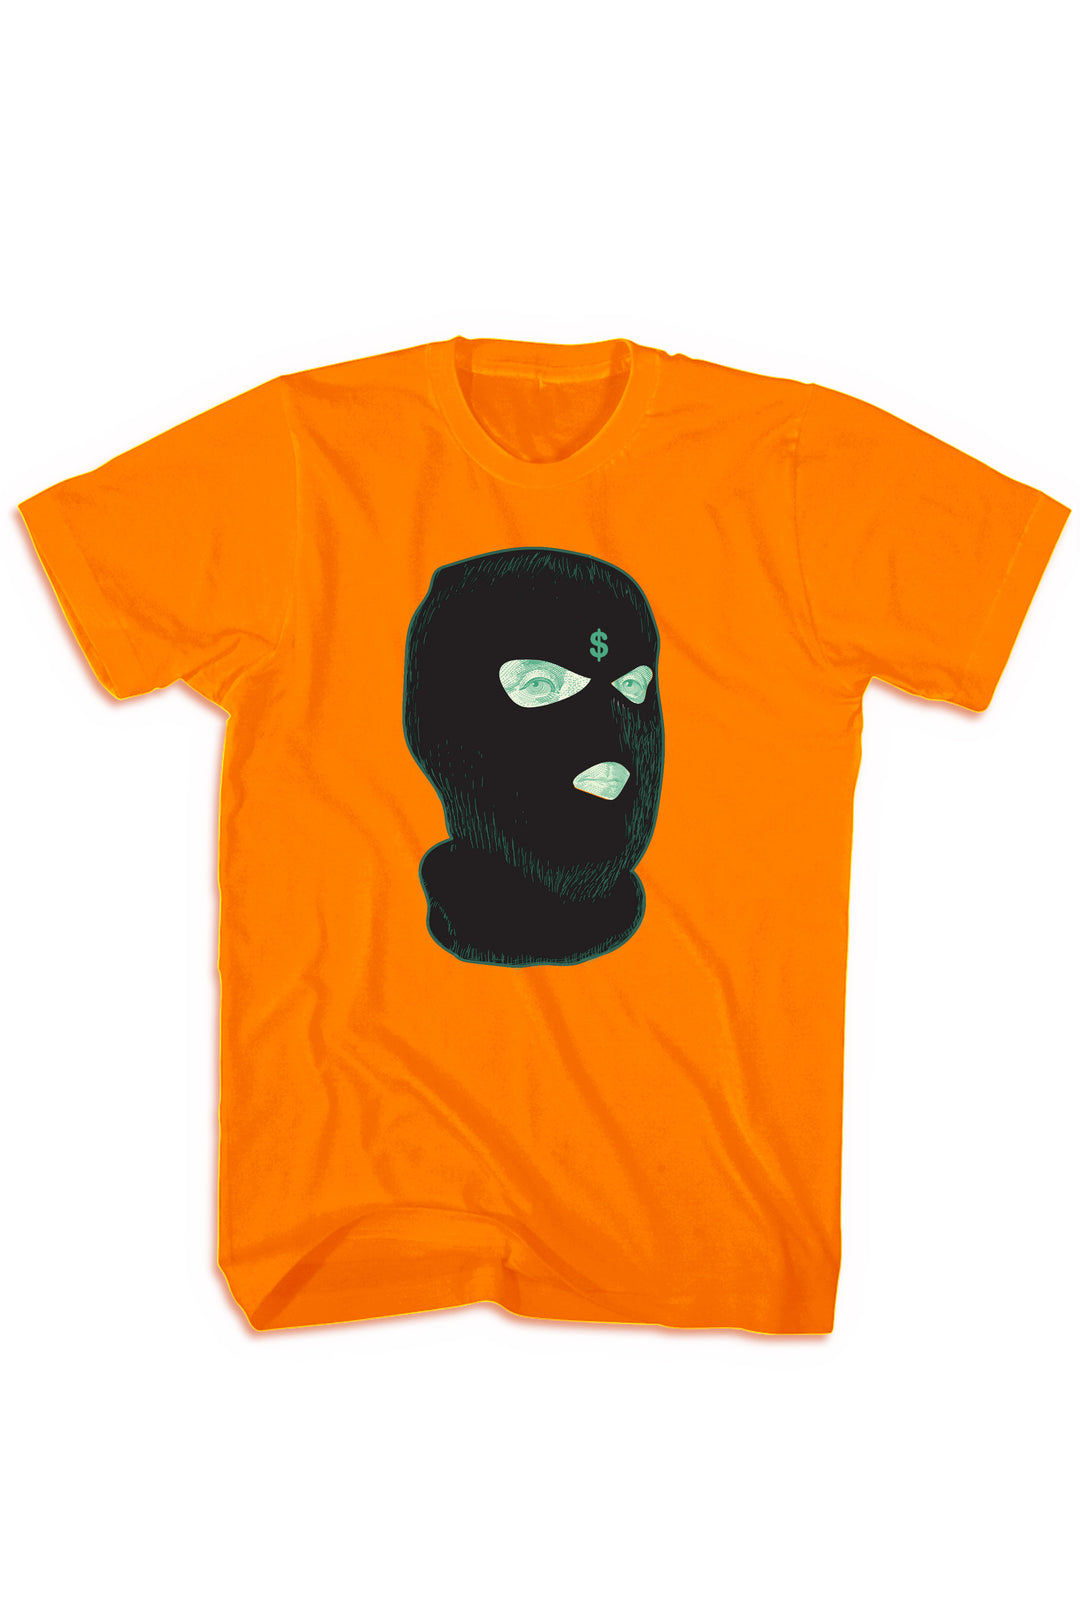 Ski Mask Money Tee (Black Logo) - Zamage